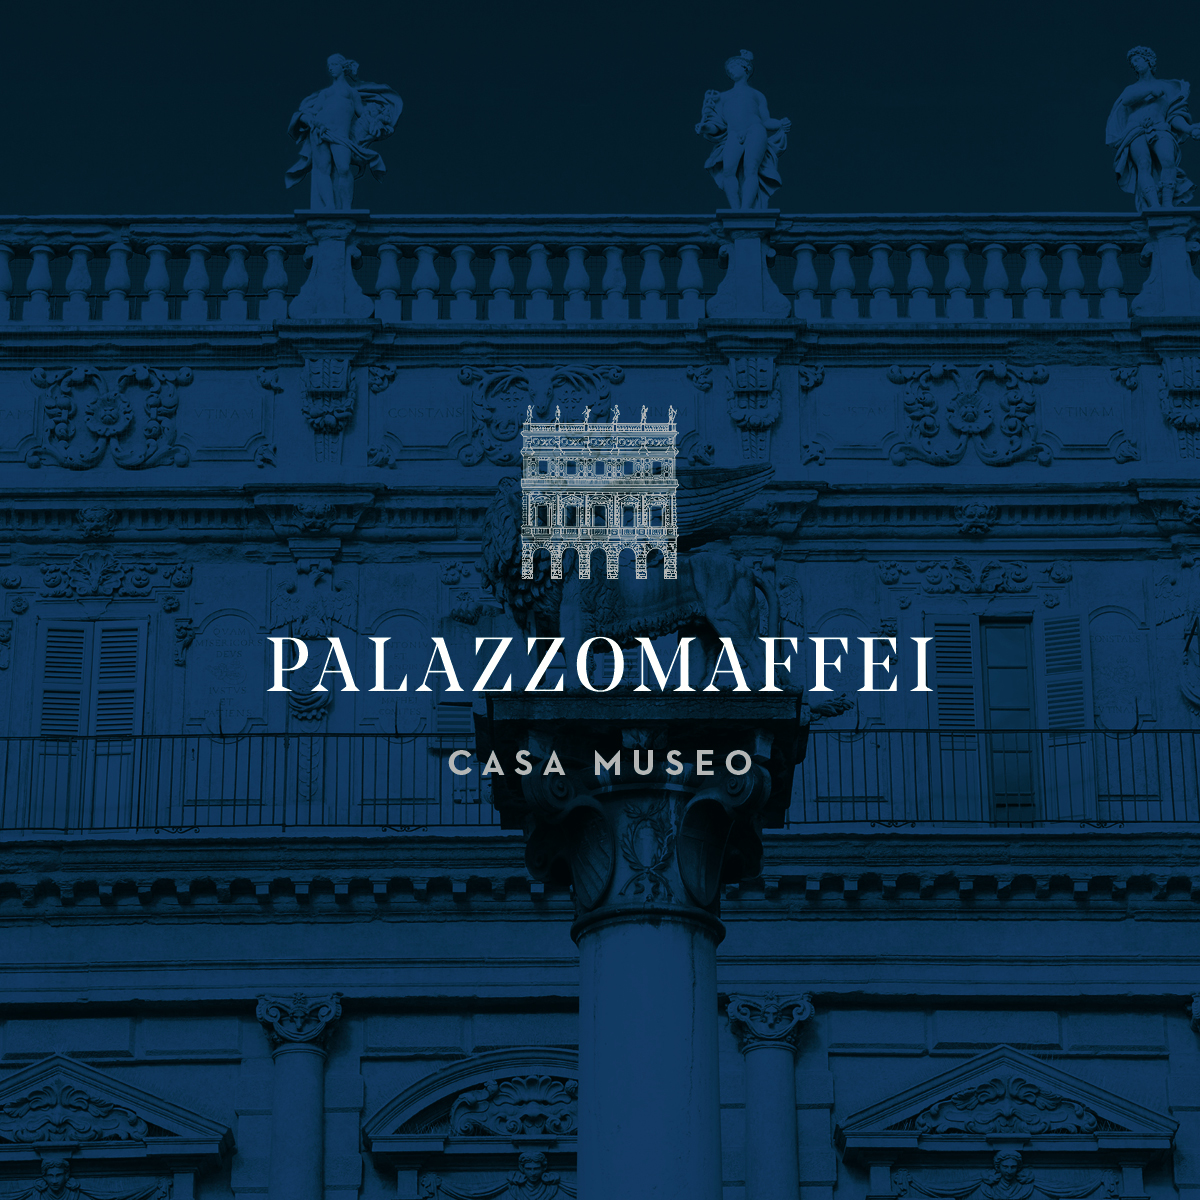 Palazzo-MaffeiCasa-Museo-017 